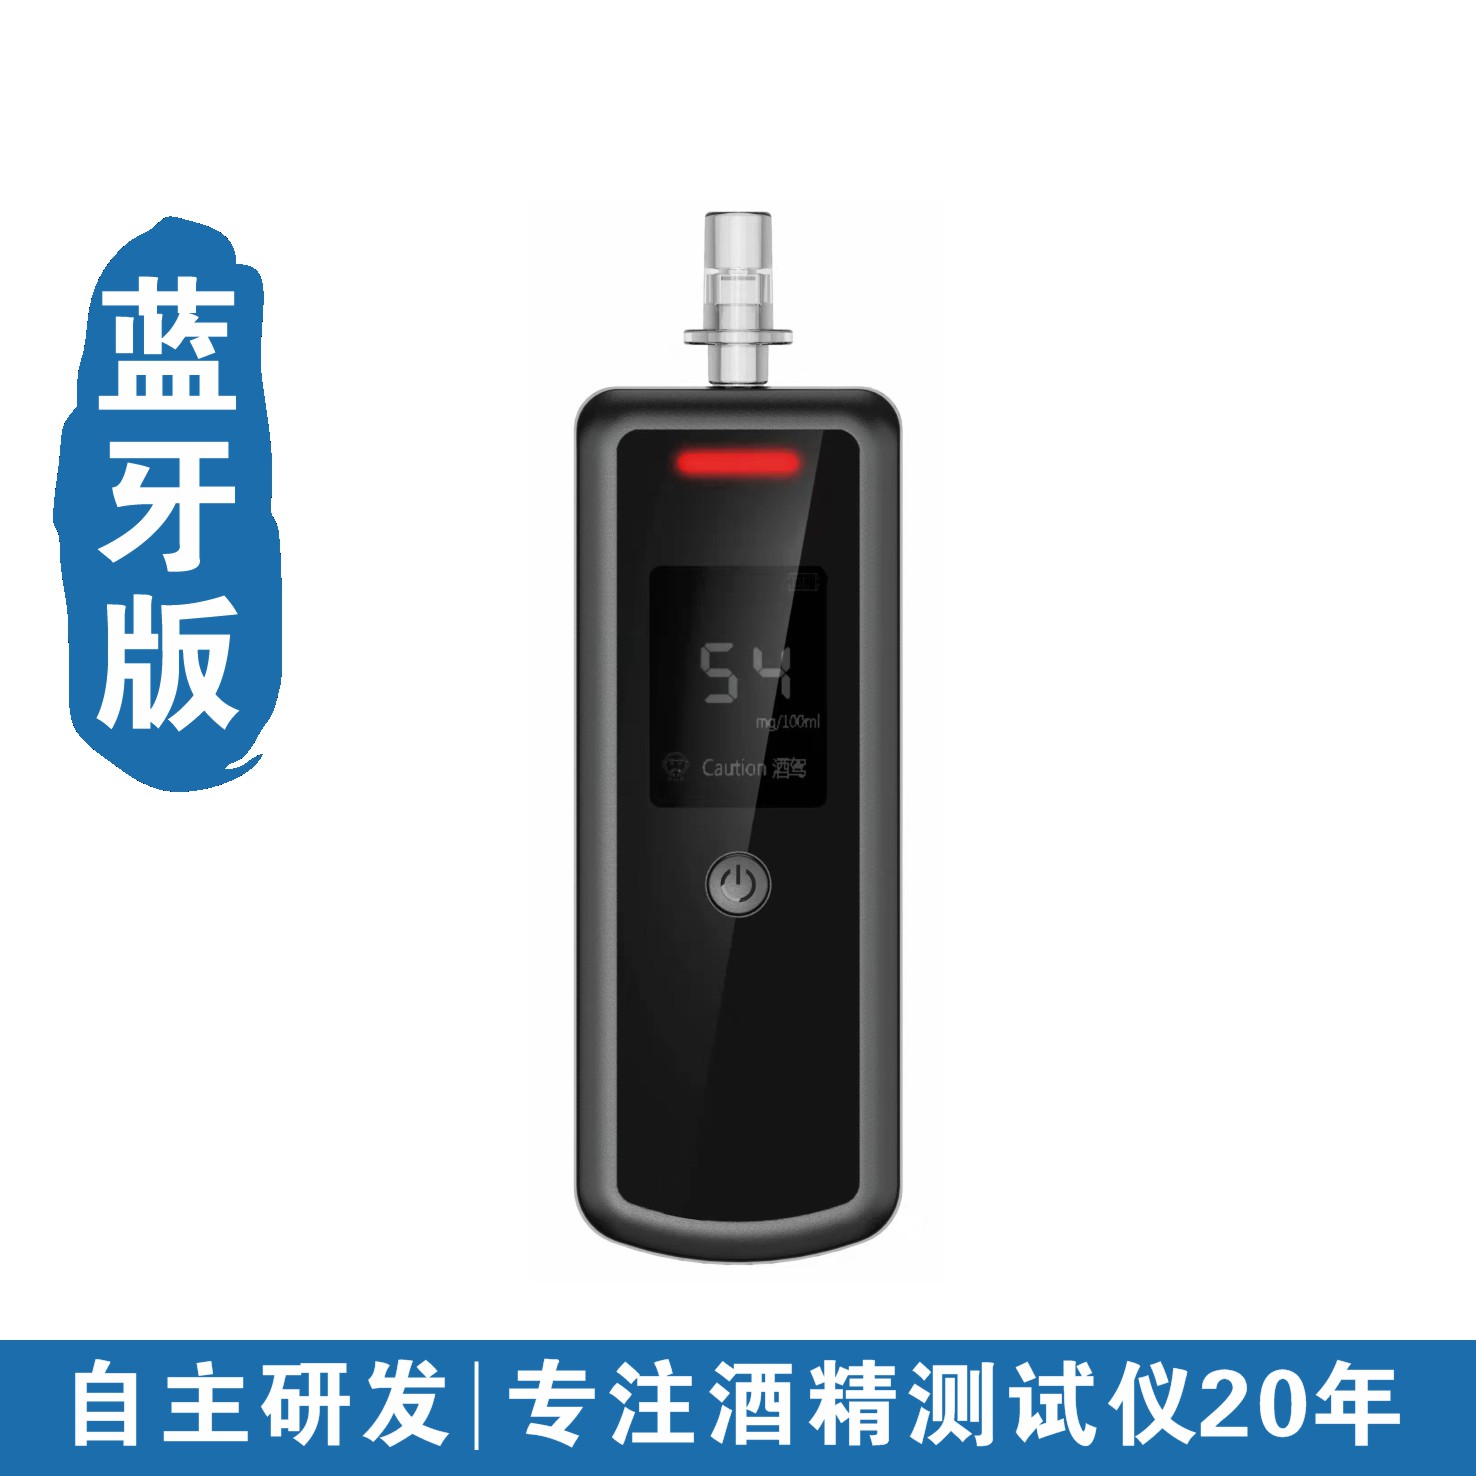 酒安1800酒精检测仪-供应产品-深圳市因特迈科技有限公司-特种装备网